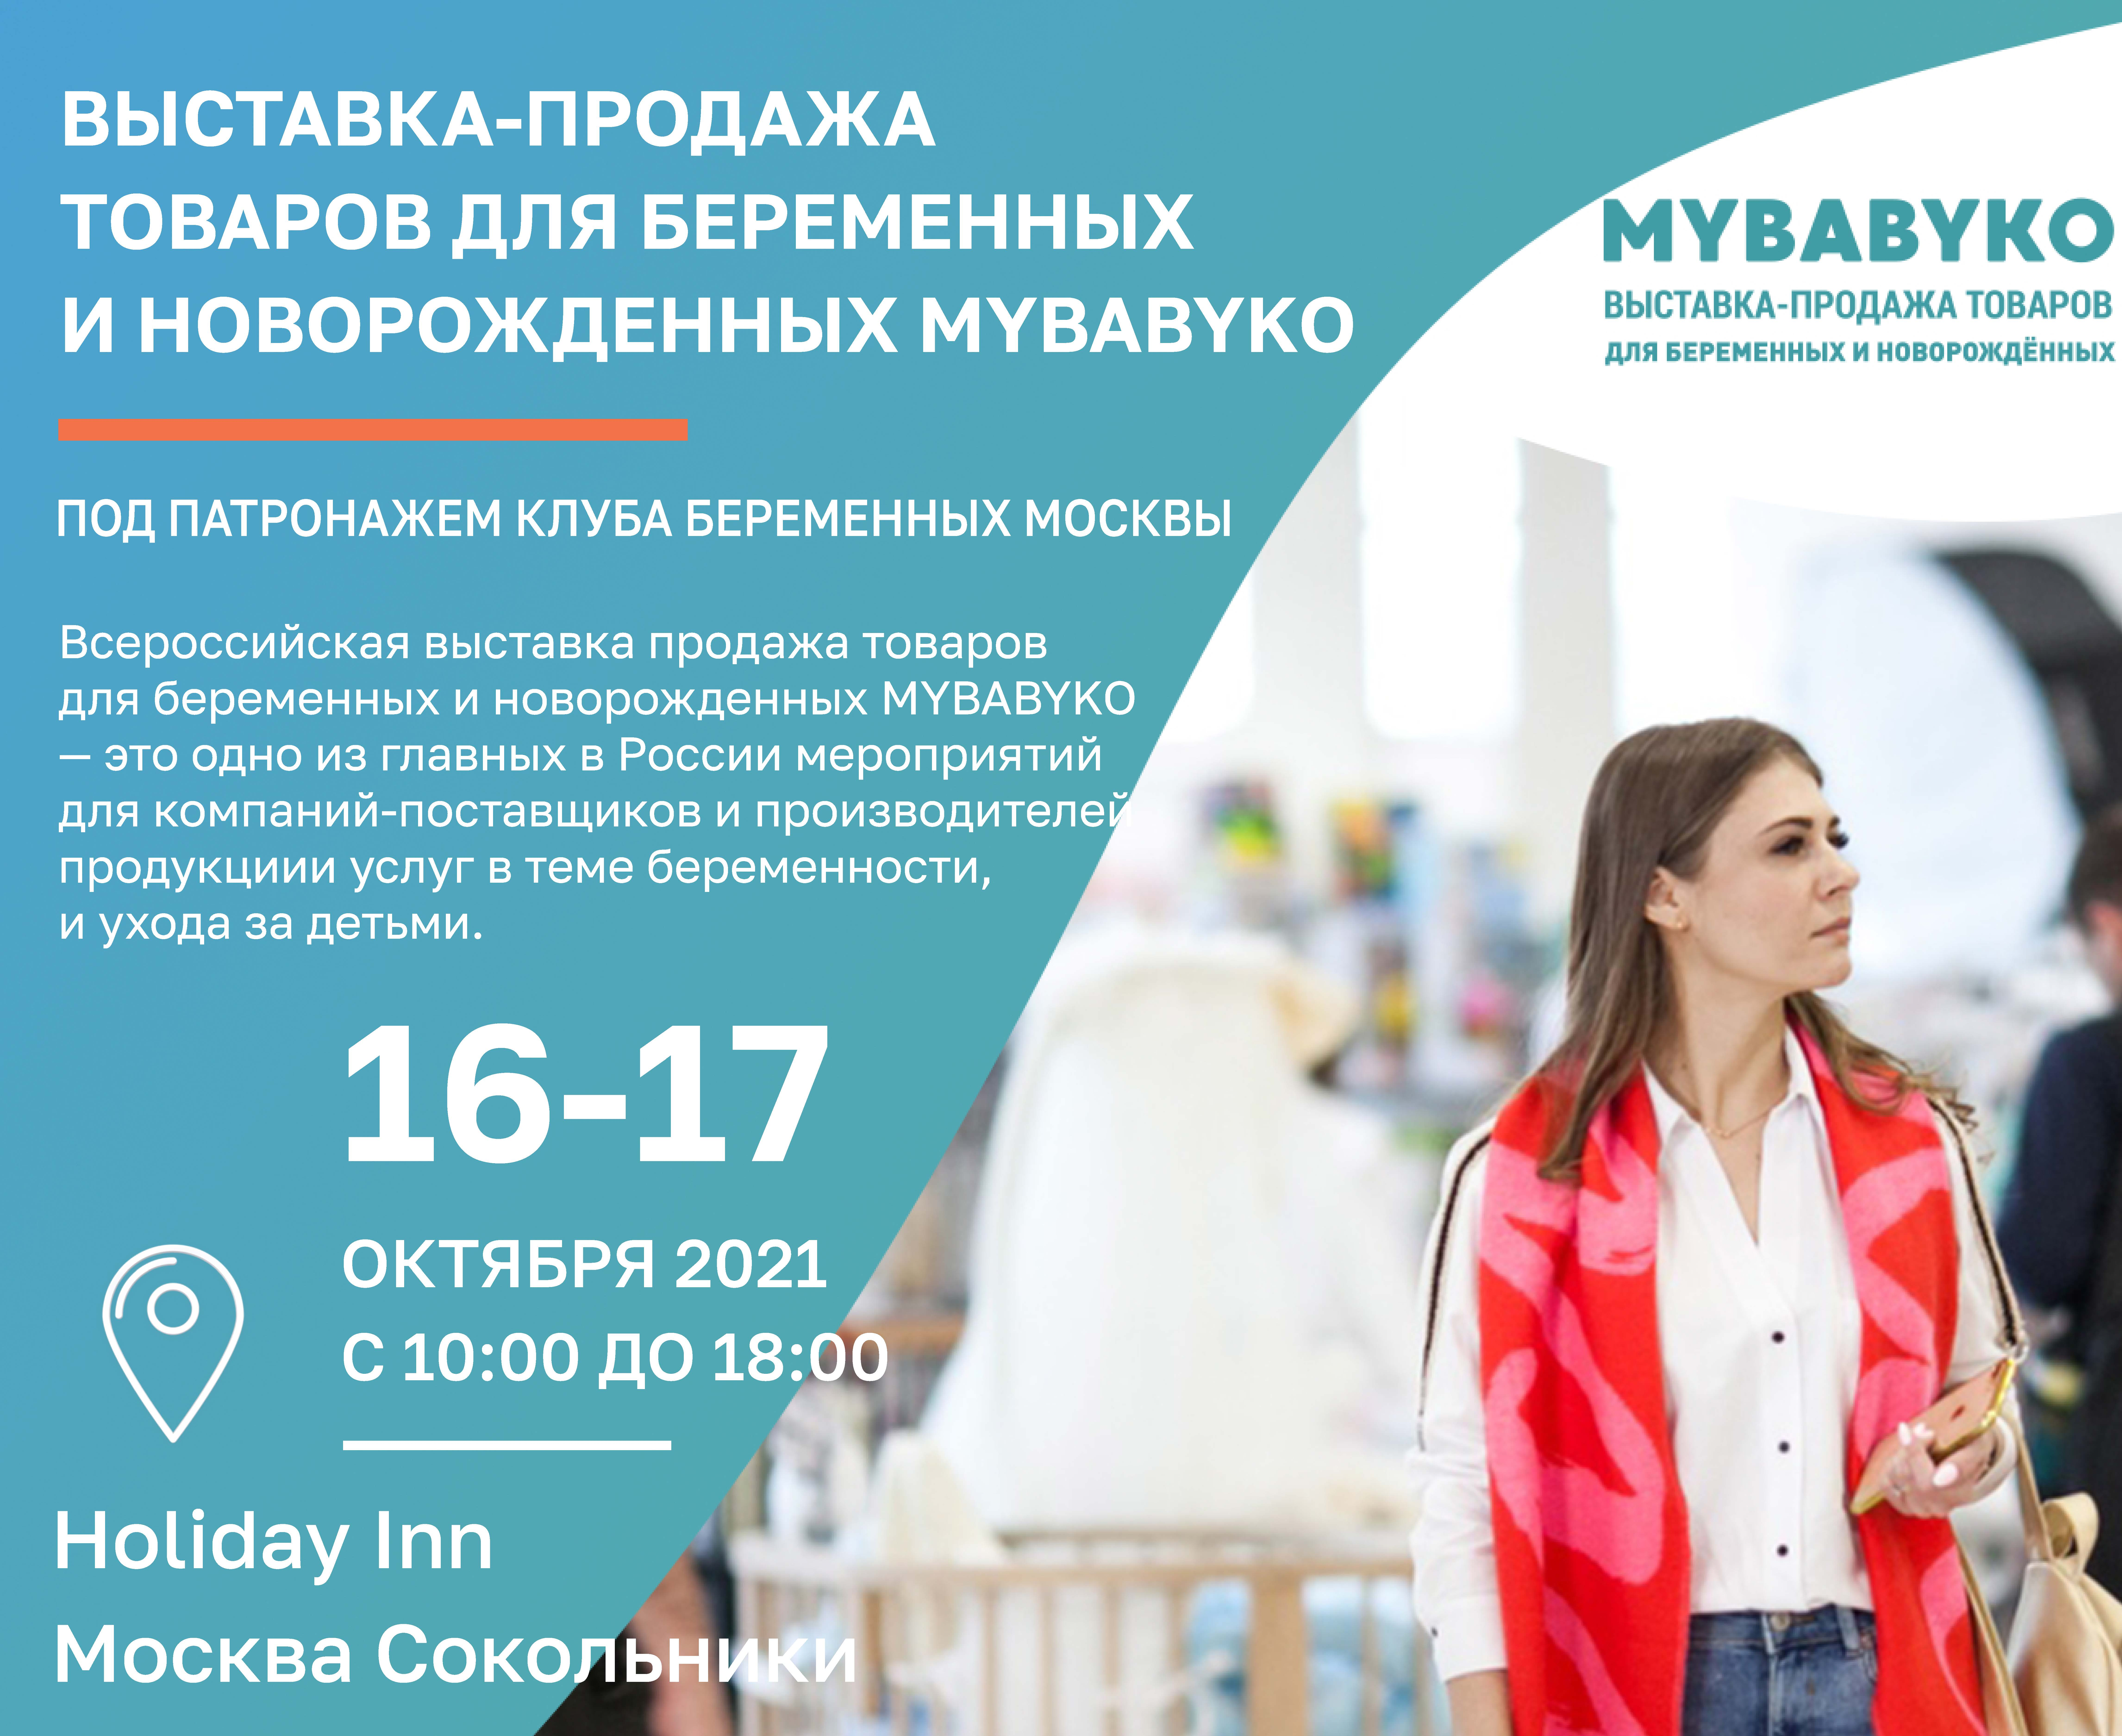 Выставка-продажа товаров для беременных и новорожденных MYBABYKO 2021 приглашает